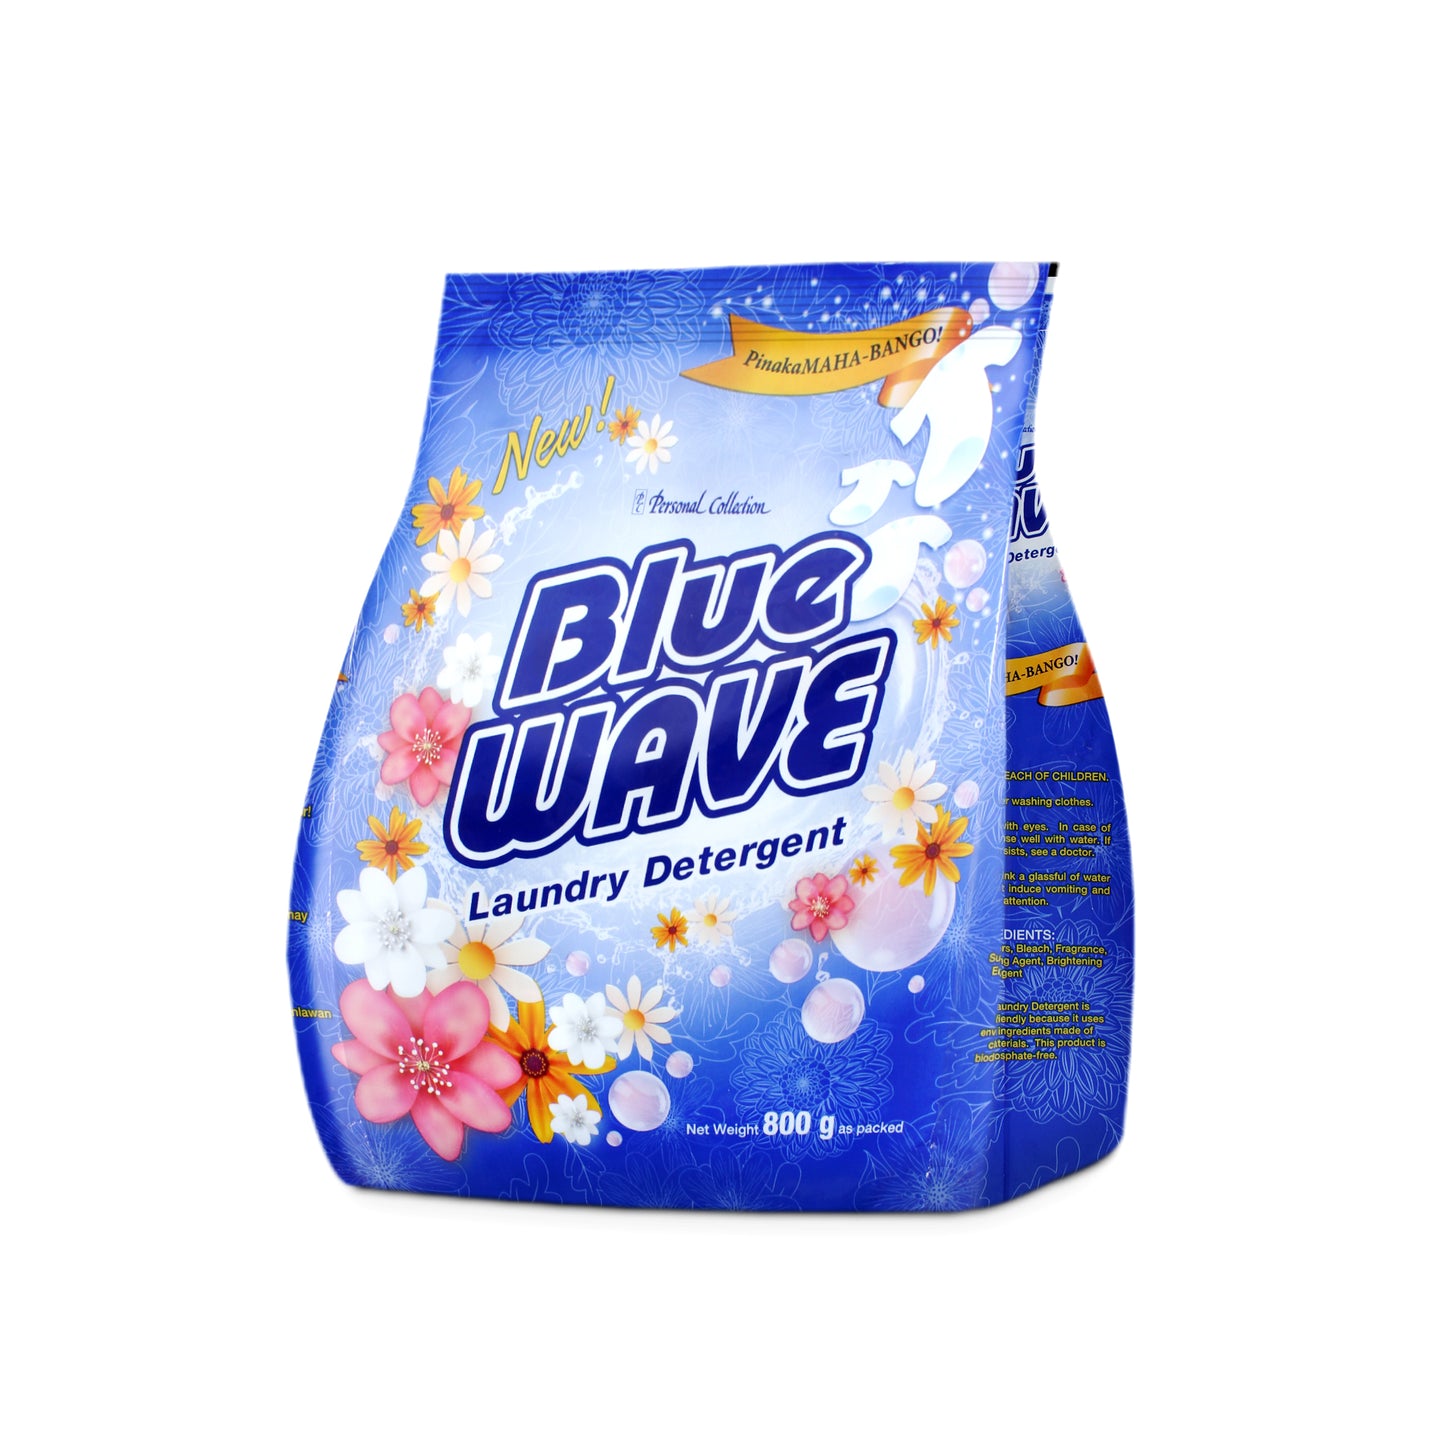 Blue Wave Powder Laundry Detergent Pinakamaha-bango 800 g